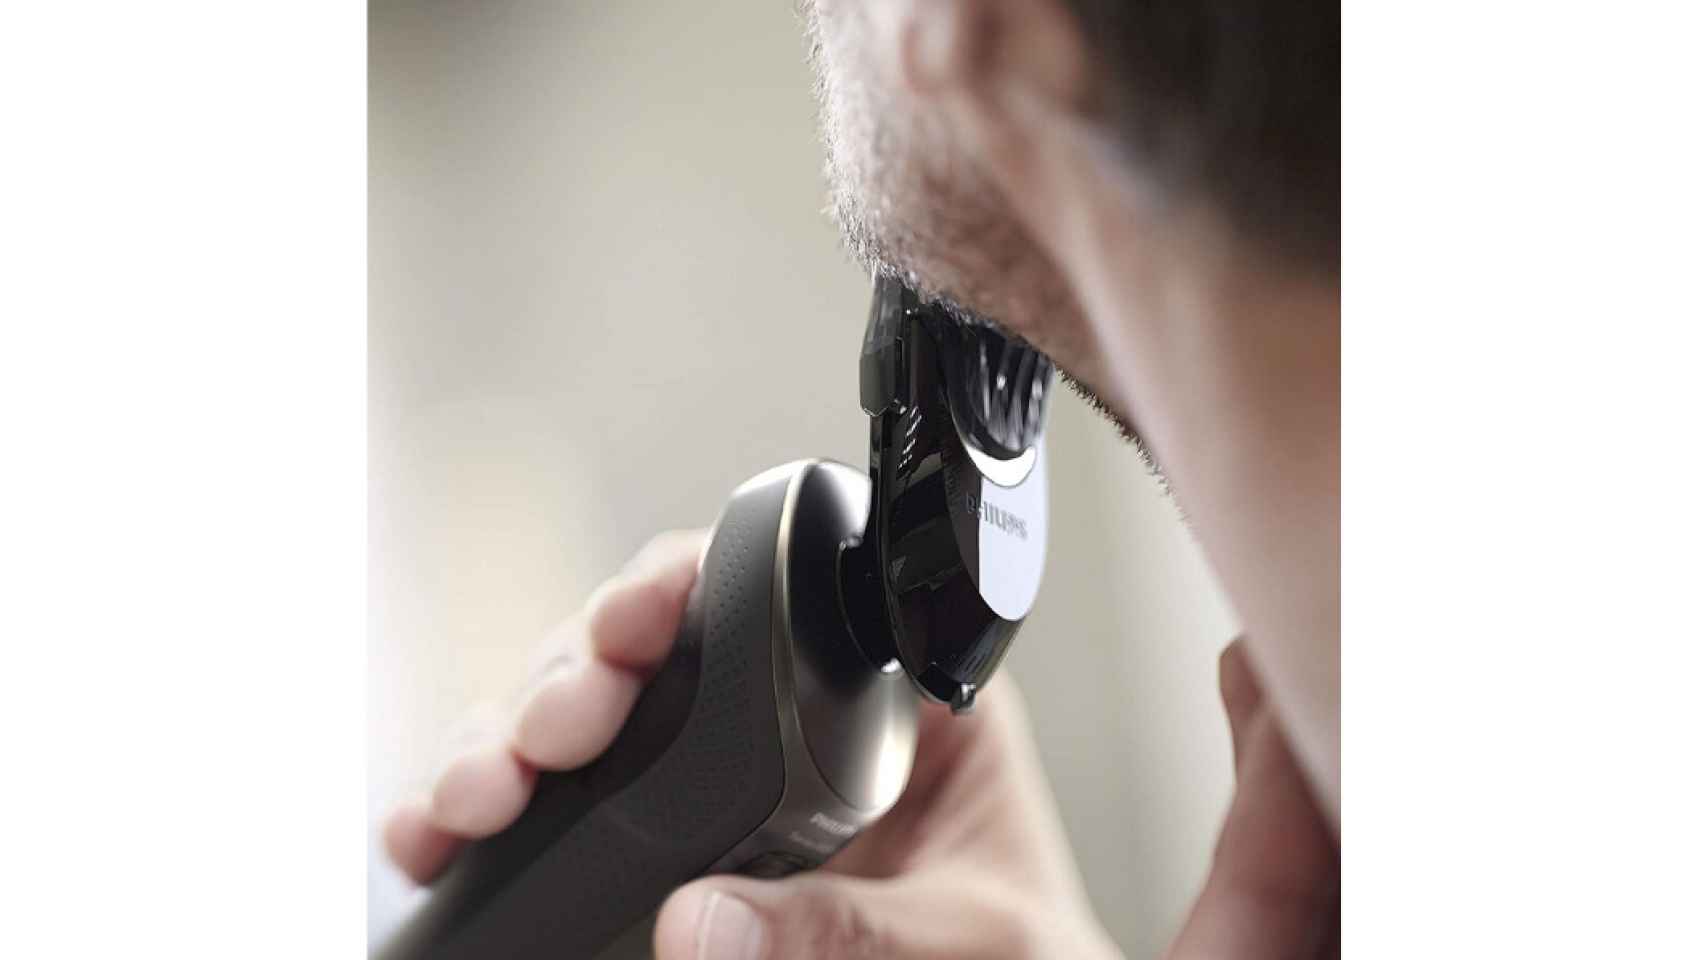  Oferta del día en : afeitadora eléctrica para hombre al 35%  de descuento